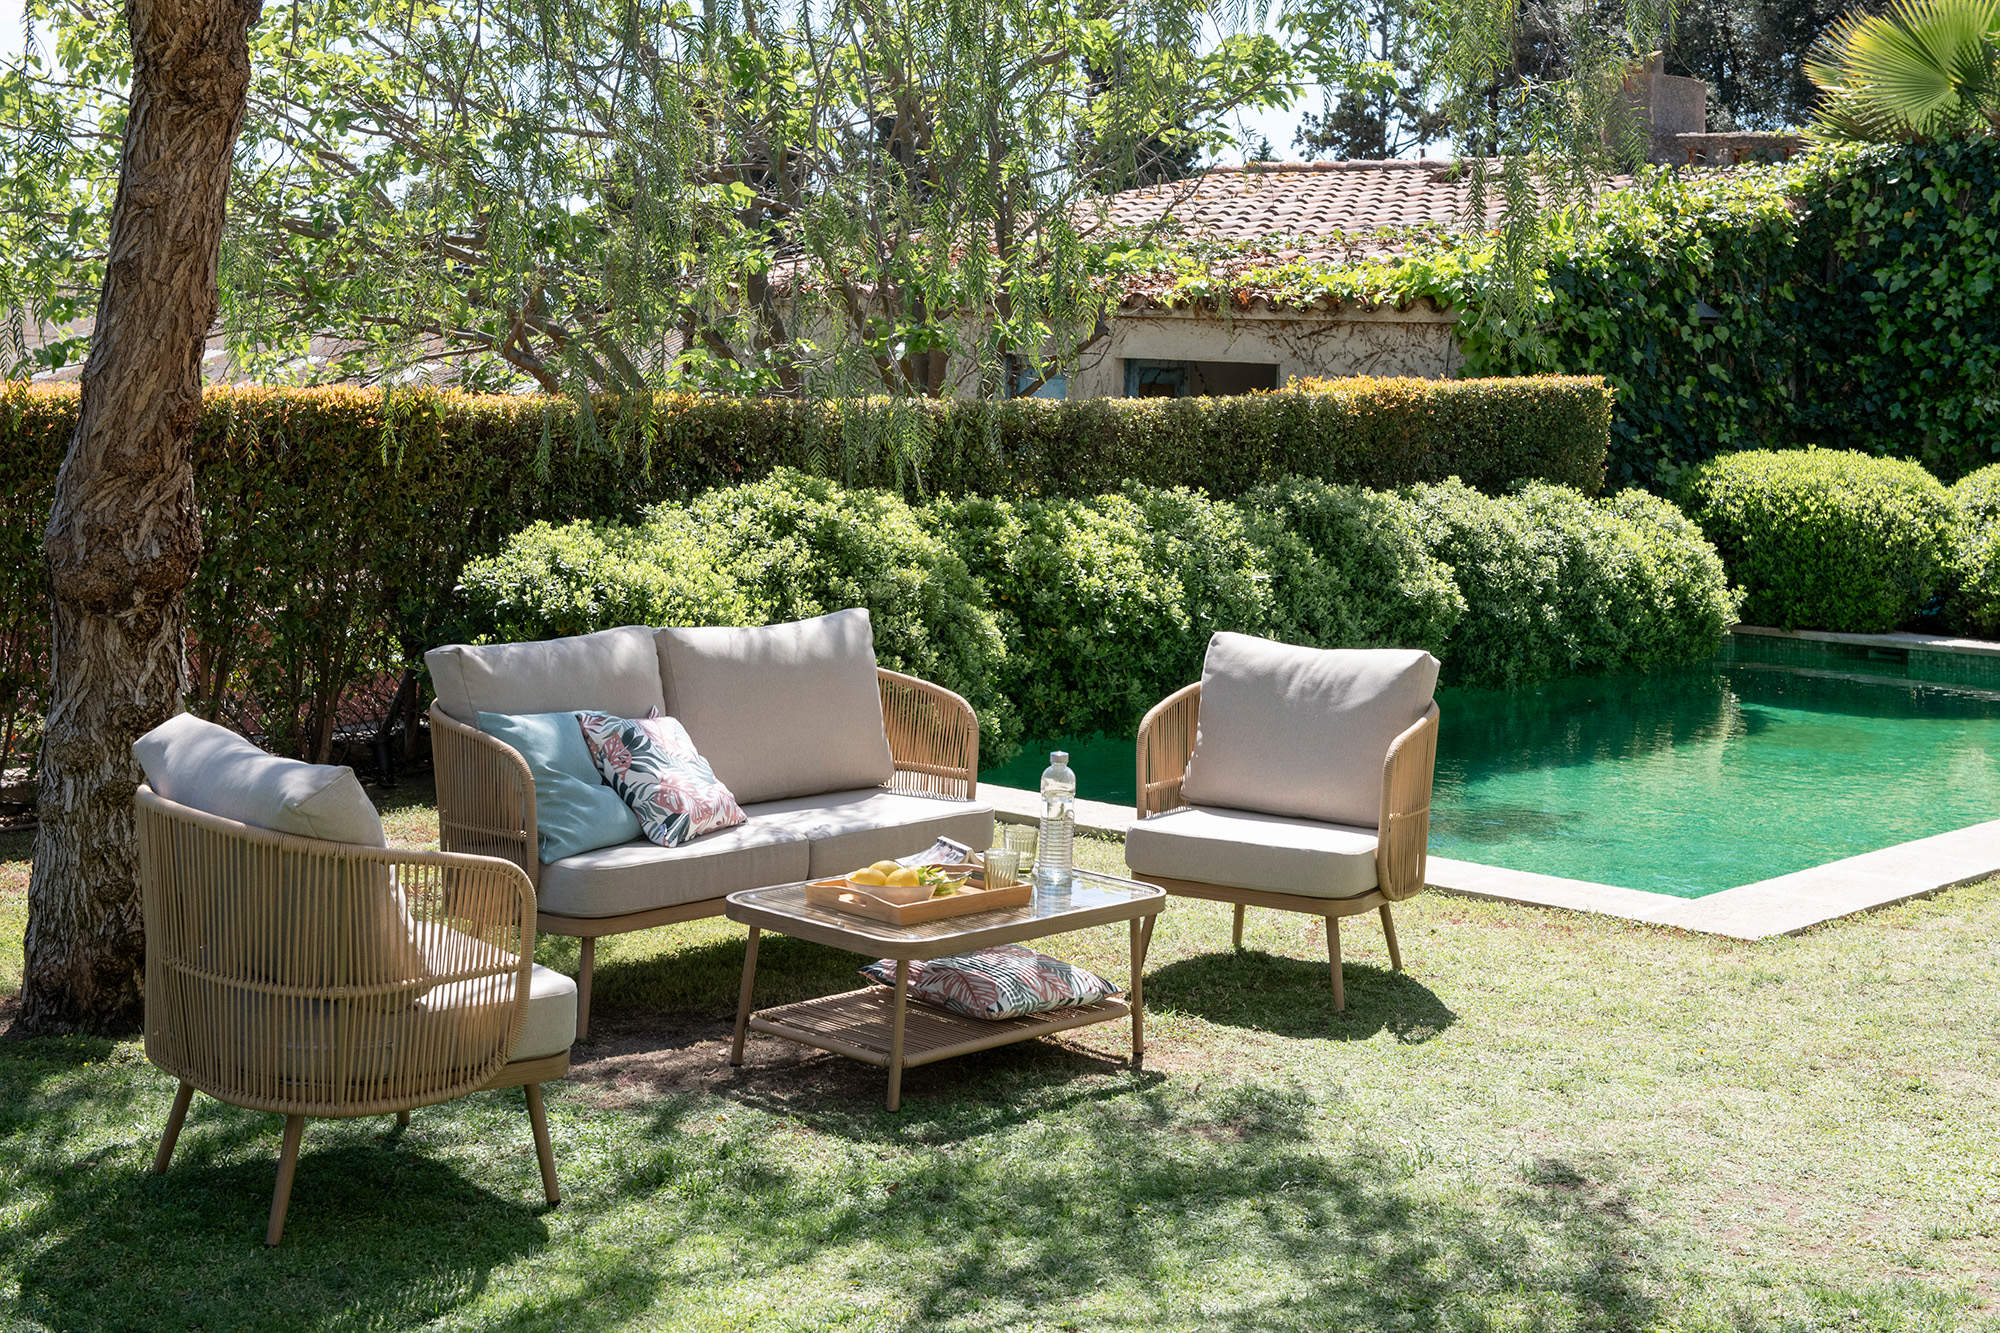 Terraza de estilo natural con mobiliario de la firma Casa Viva.